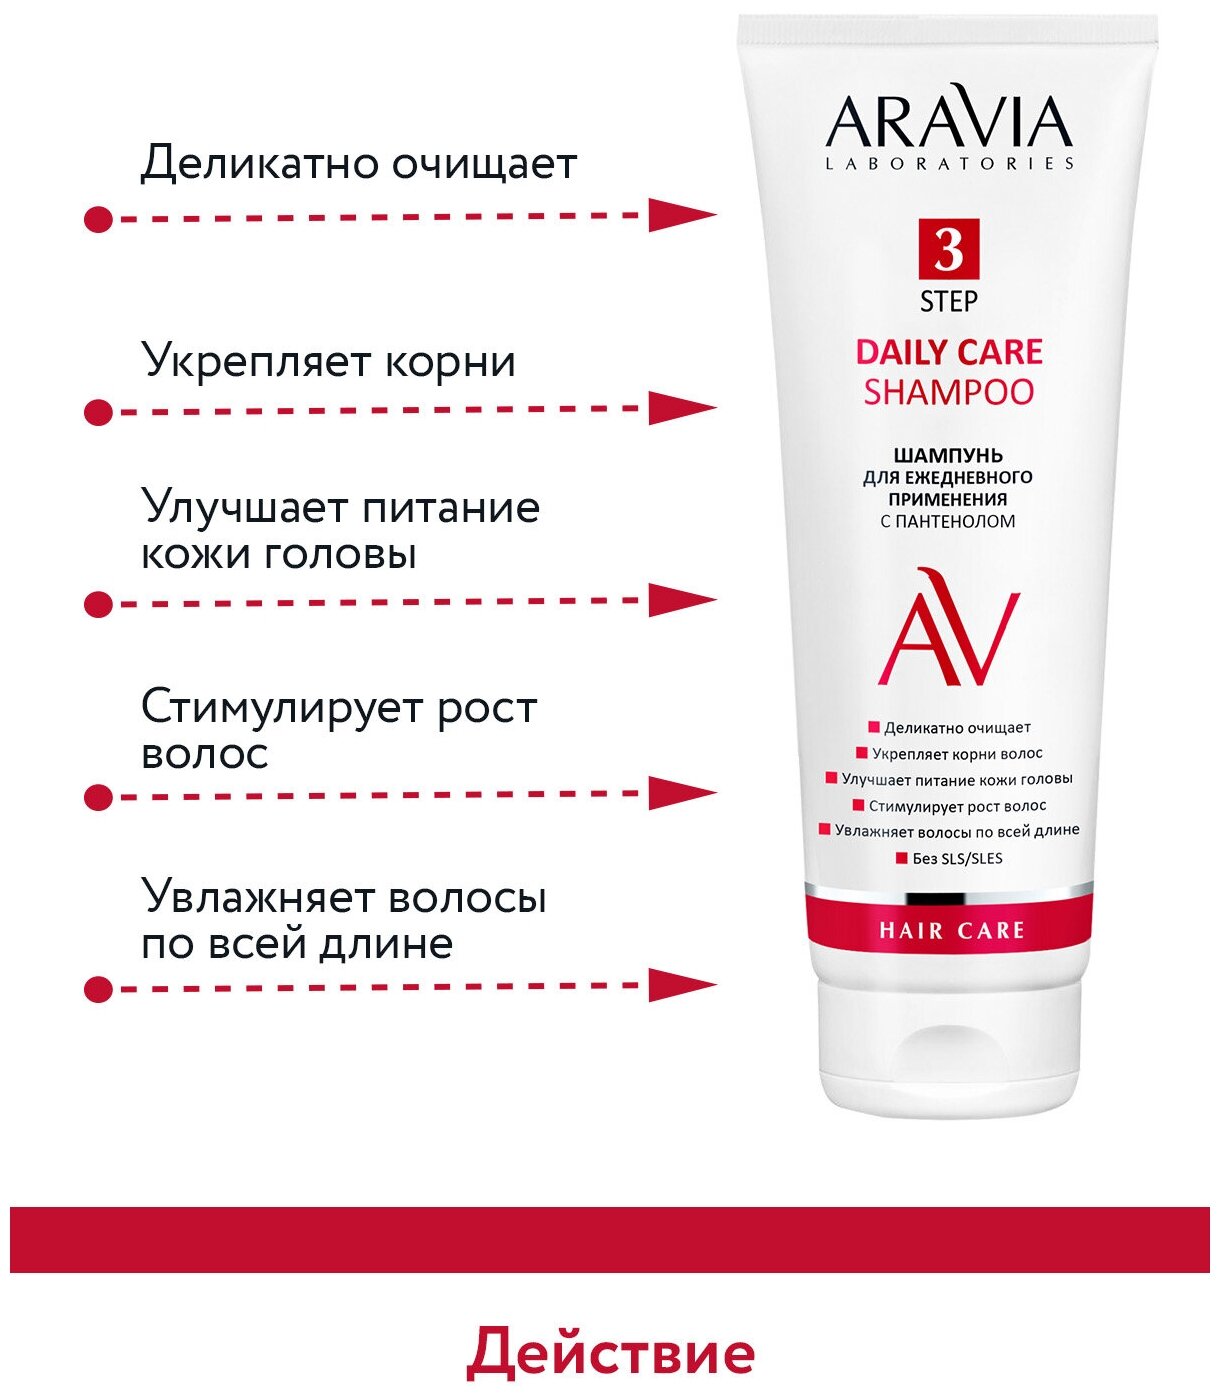 ARAVIA Шампунь для ежедневного применения с пантенолом Daily Care Shampoo, 250 мл